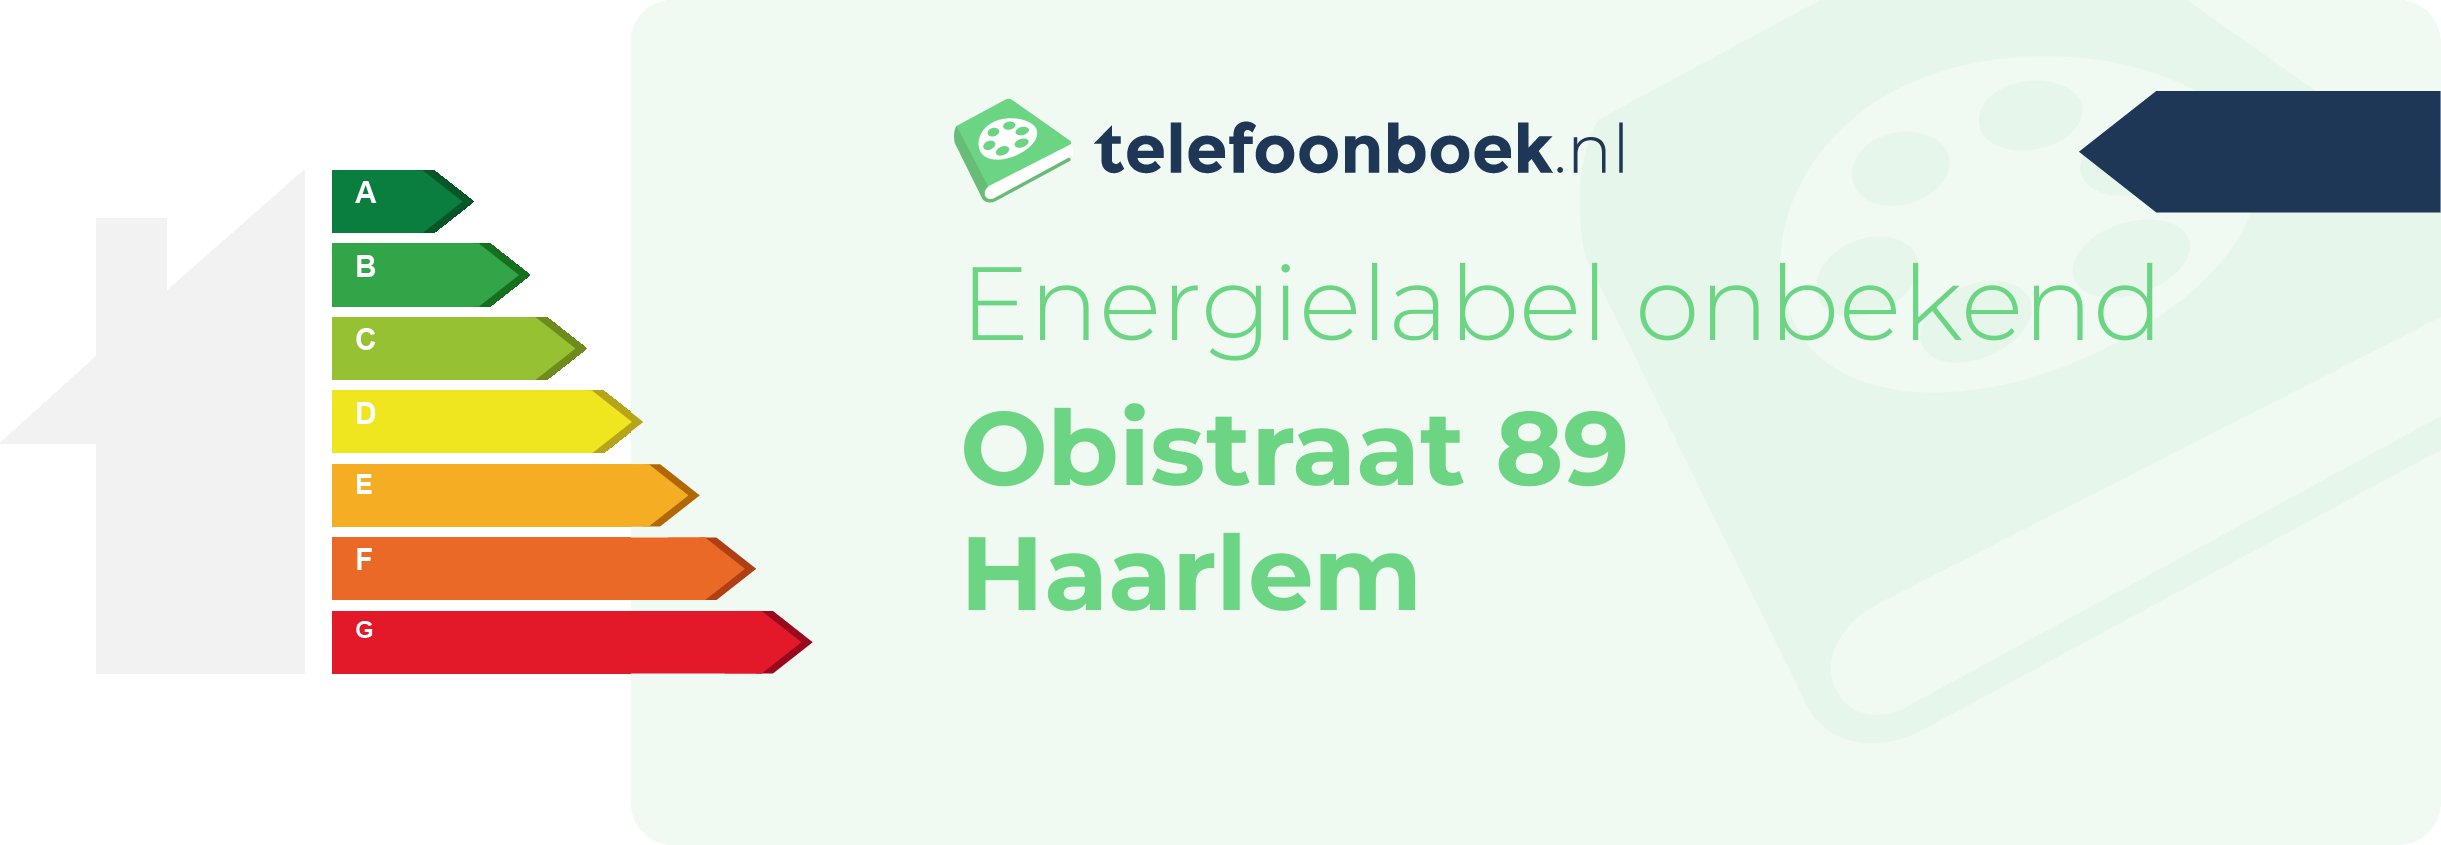 Energielabel Obistraat 89 Haarlem